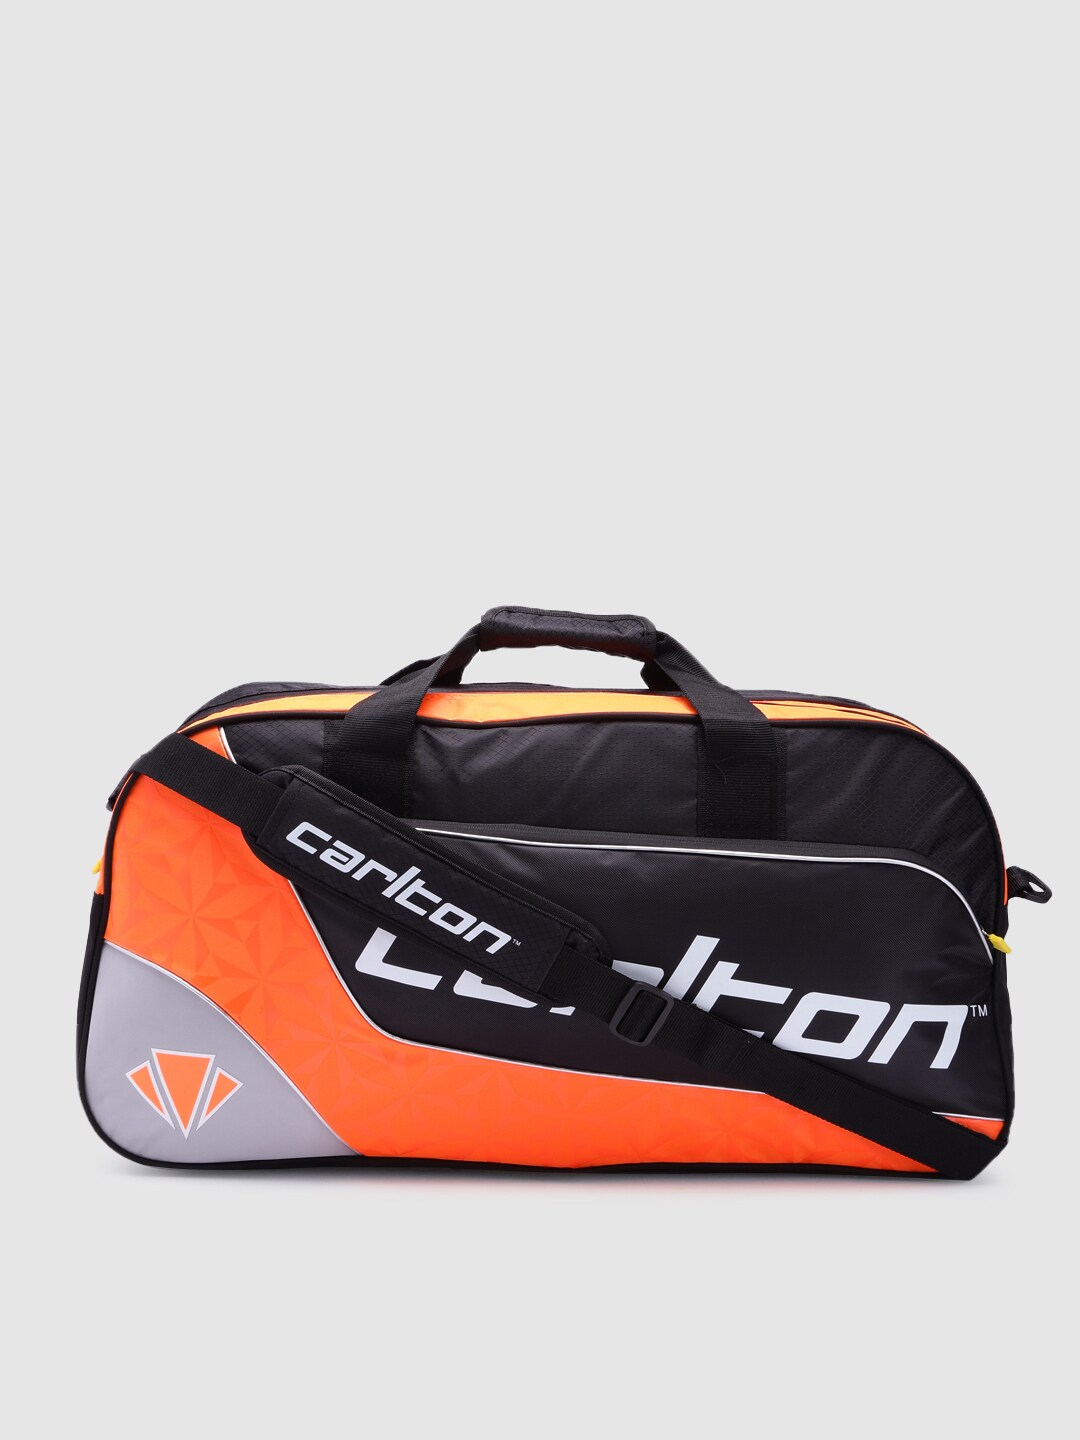 CARLTON Black & Orange Airblade 2-Comp Rectangular Kit Bag Price in India